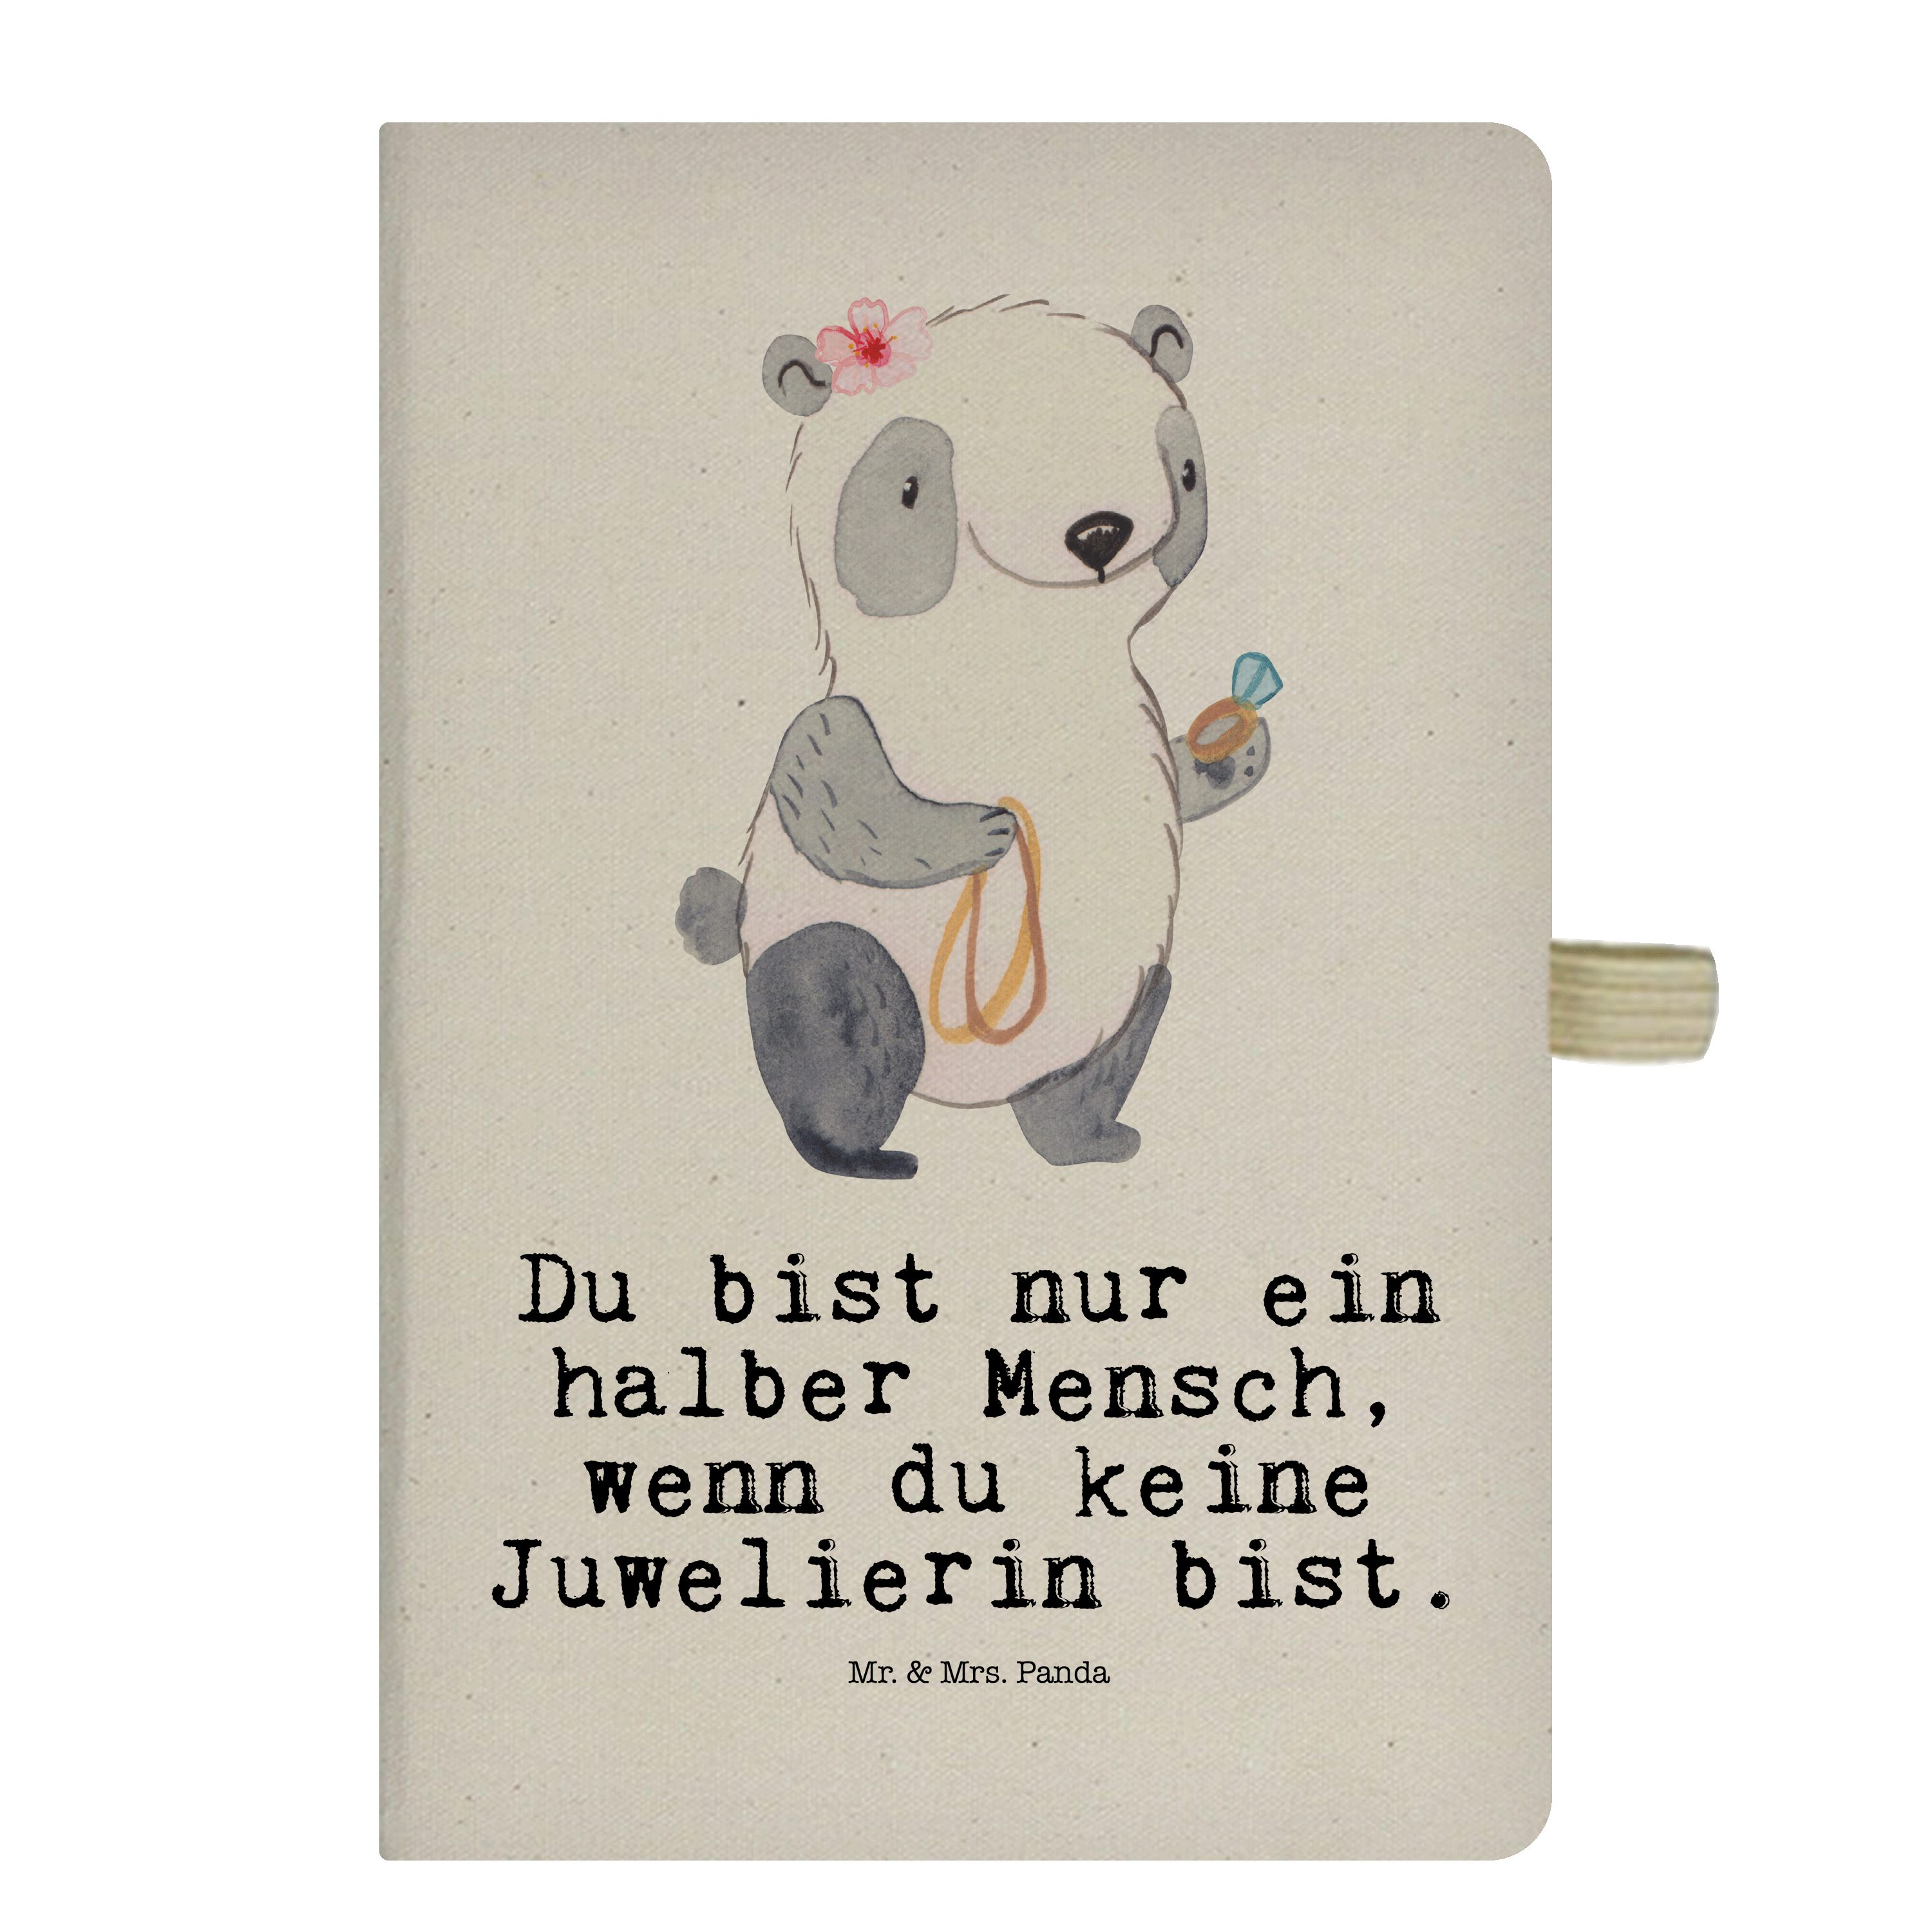 Mr. & Mrs. Panda Notizbuch Juwelierin mit Herz - Transparent - Geschenk, Schmuckgeschäft, Jubilä Mr. & Mrs. Panda